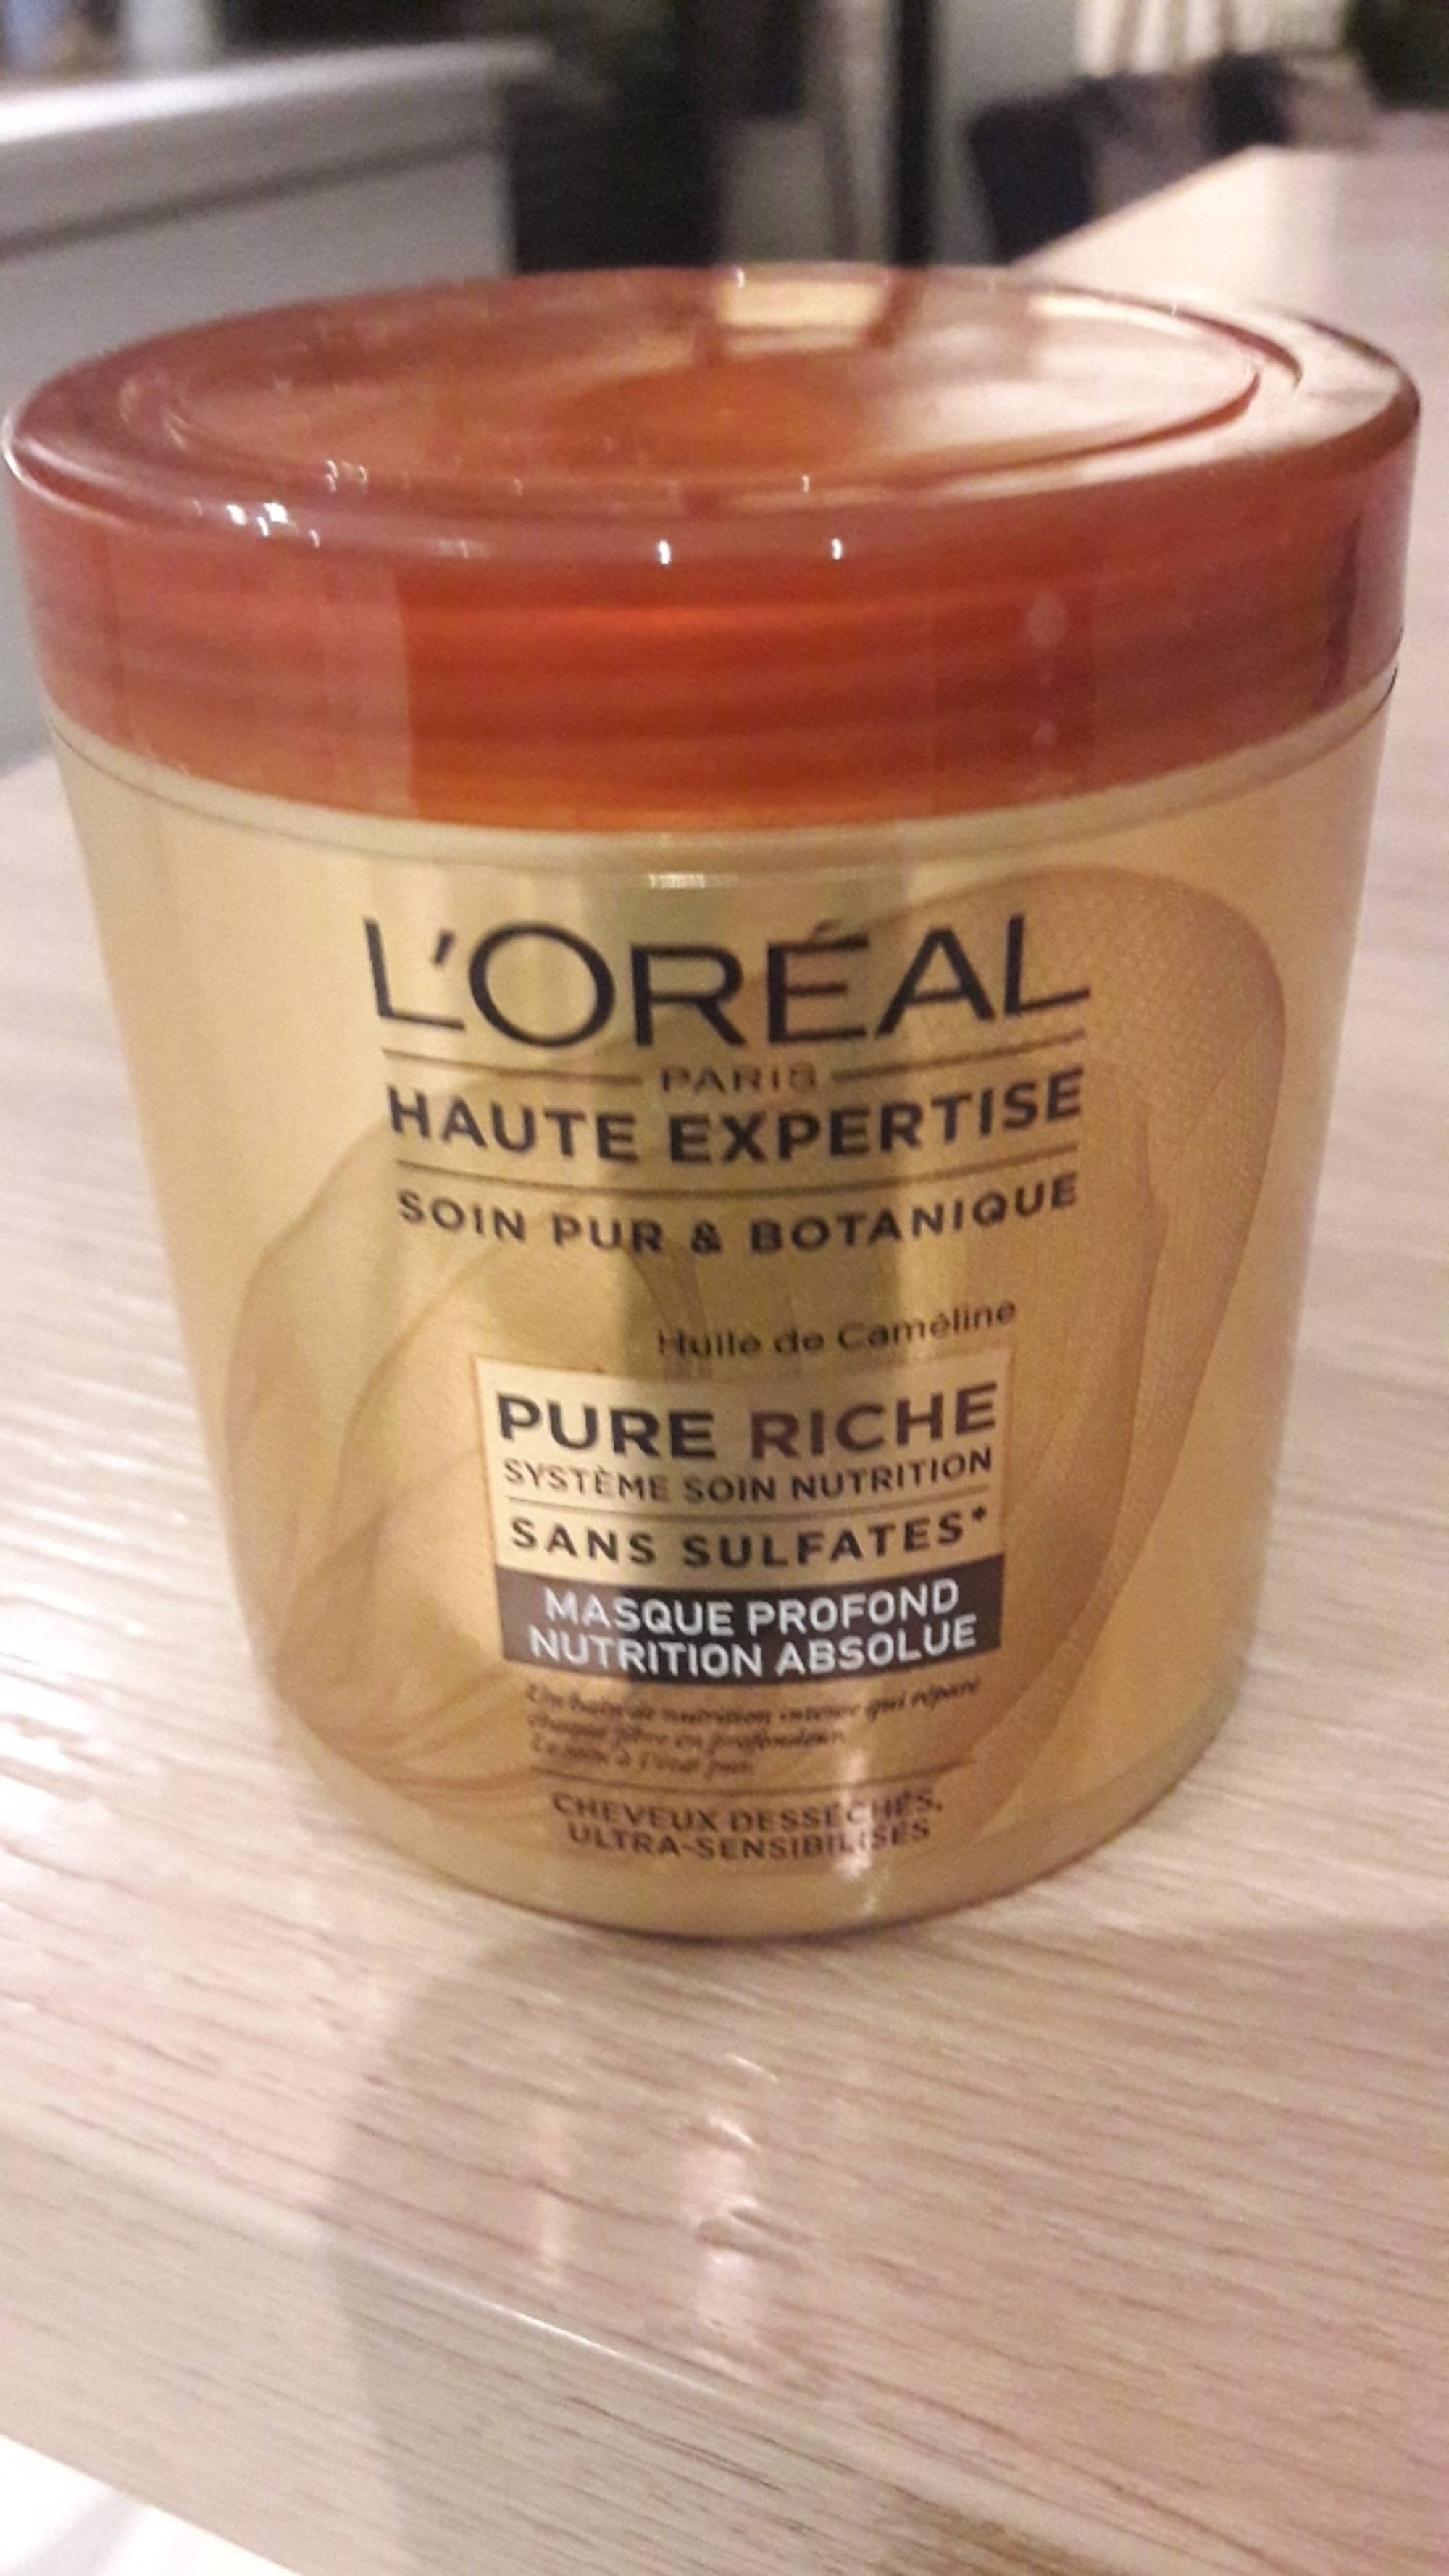 L'ORÉAL - Haute expertise pure riche - Masque profond nutrition absolue cheveux desséchés